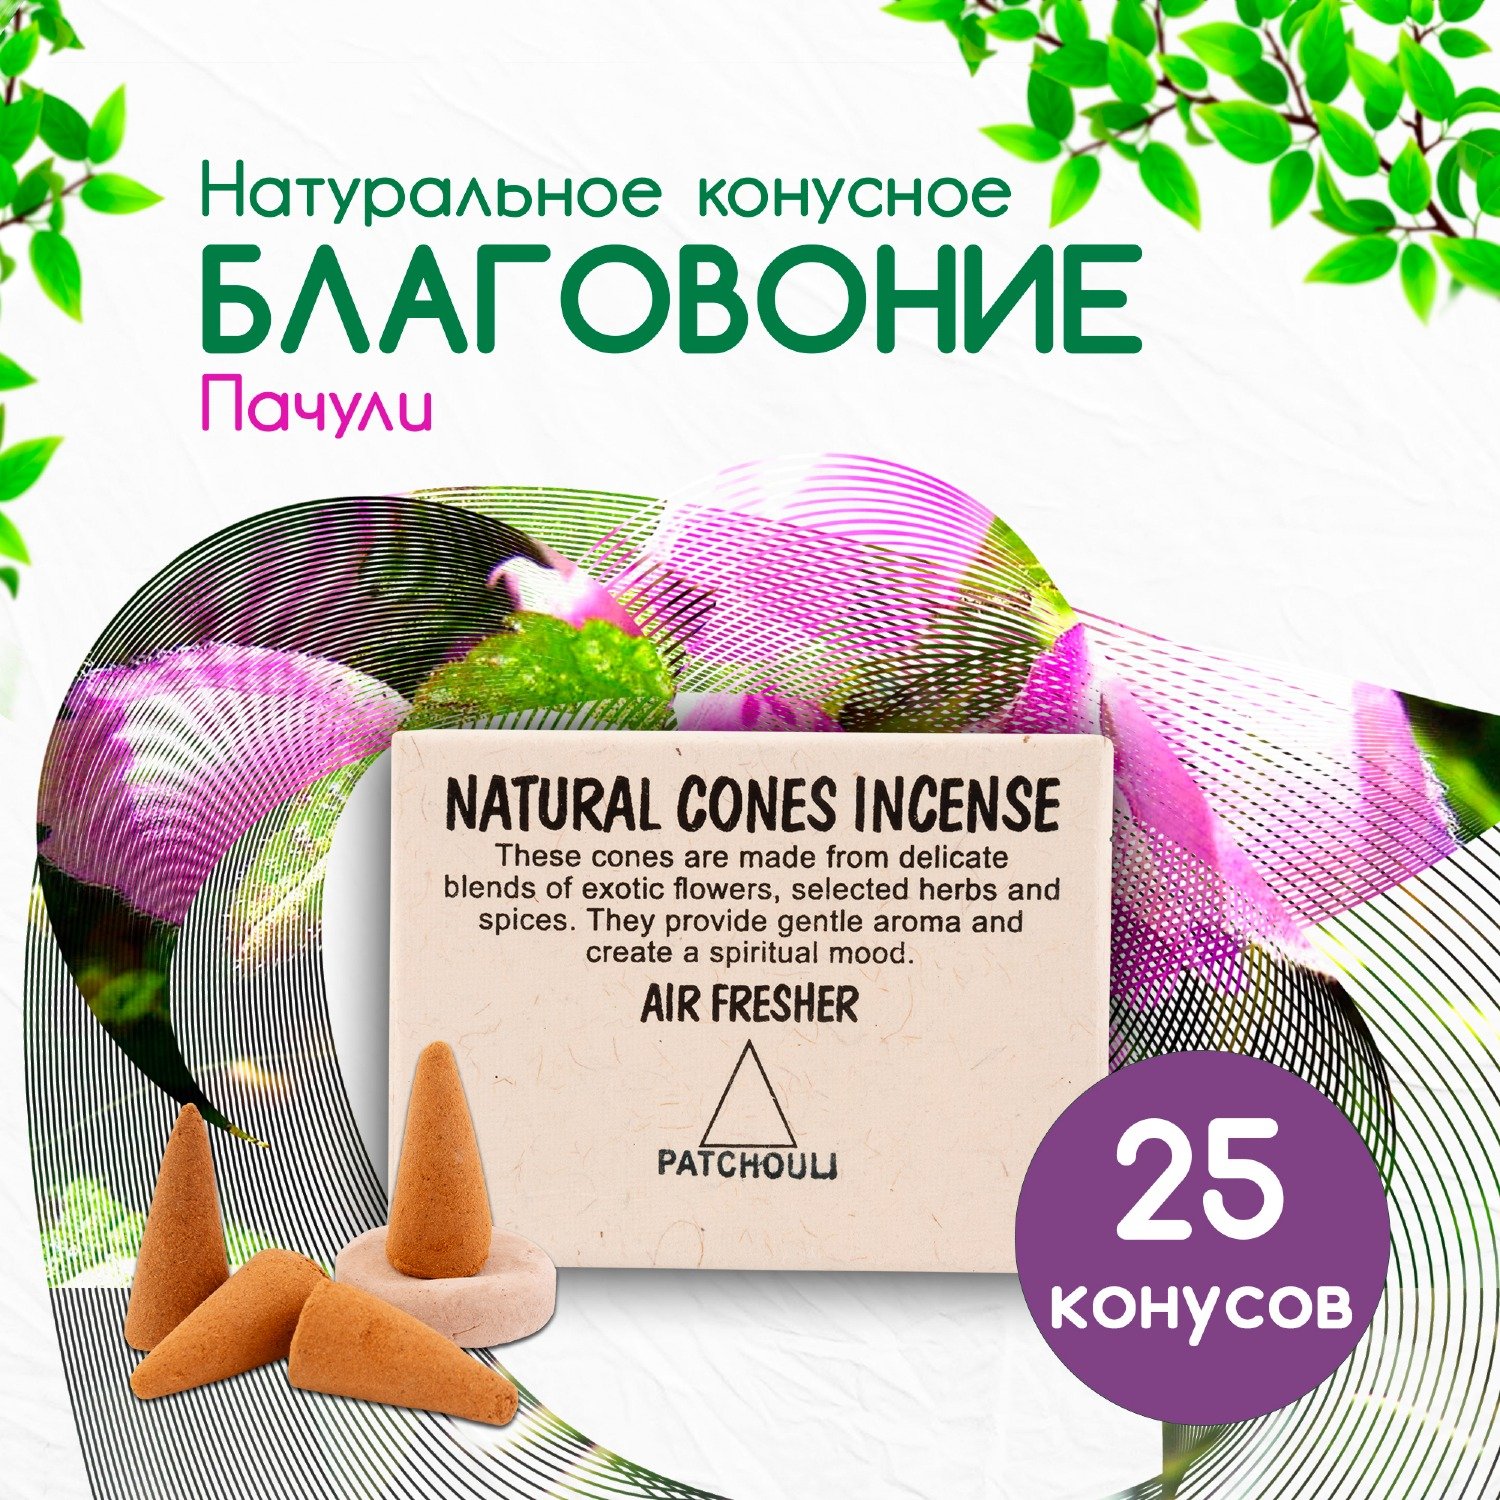 Natural Cones Incense "Patchouli" (Натуральное конусное благовоние "Пачули"), 25 конусов по 3 см. 